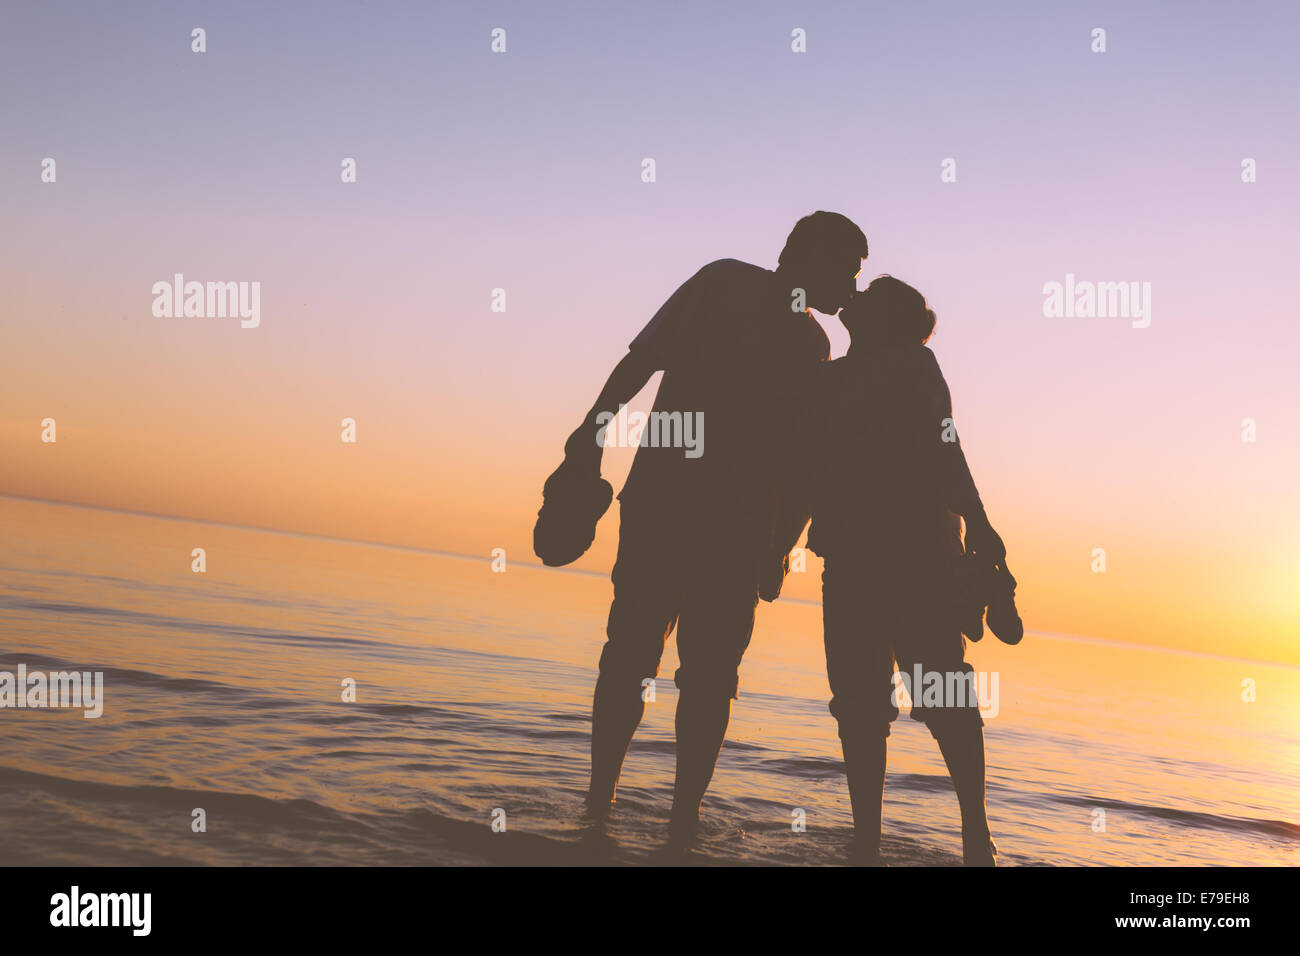 Happy senior couple silhouettes sur la plage s'embrasser Banque D'Images